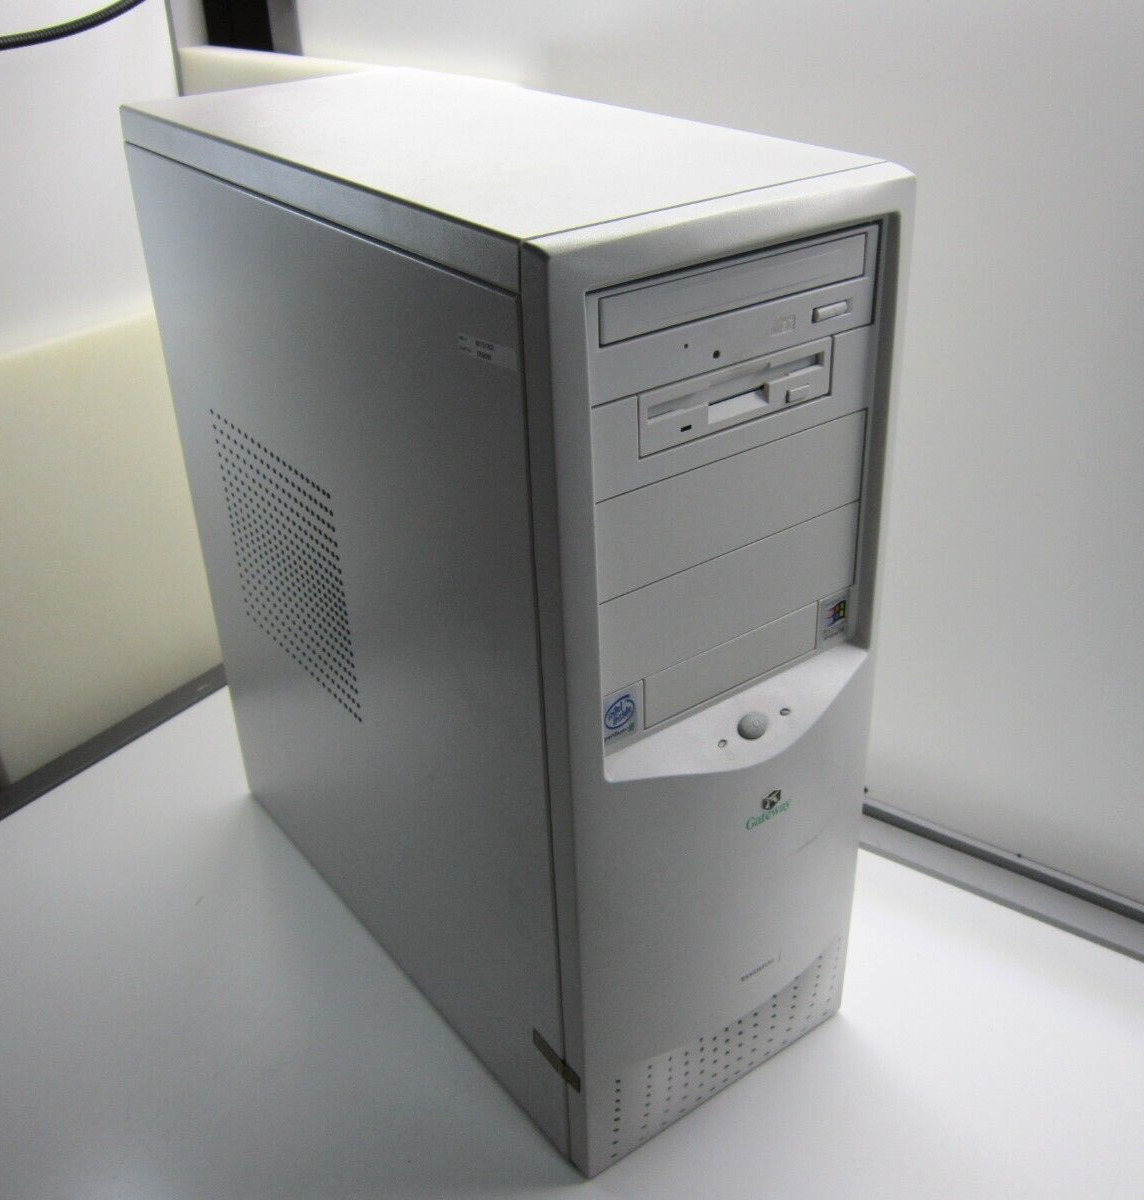 NICE Gateway Essential 500 Pentium III 500MHz 384MB RAM Win98SE VINTAGE GAMING